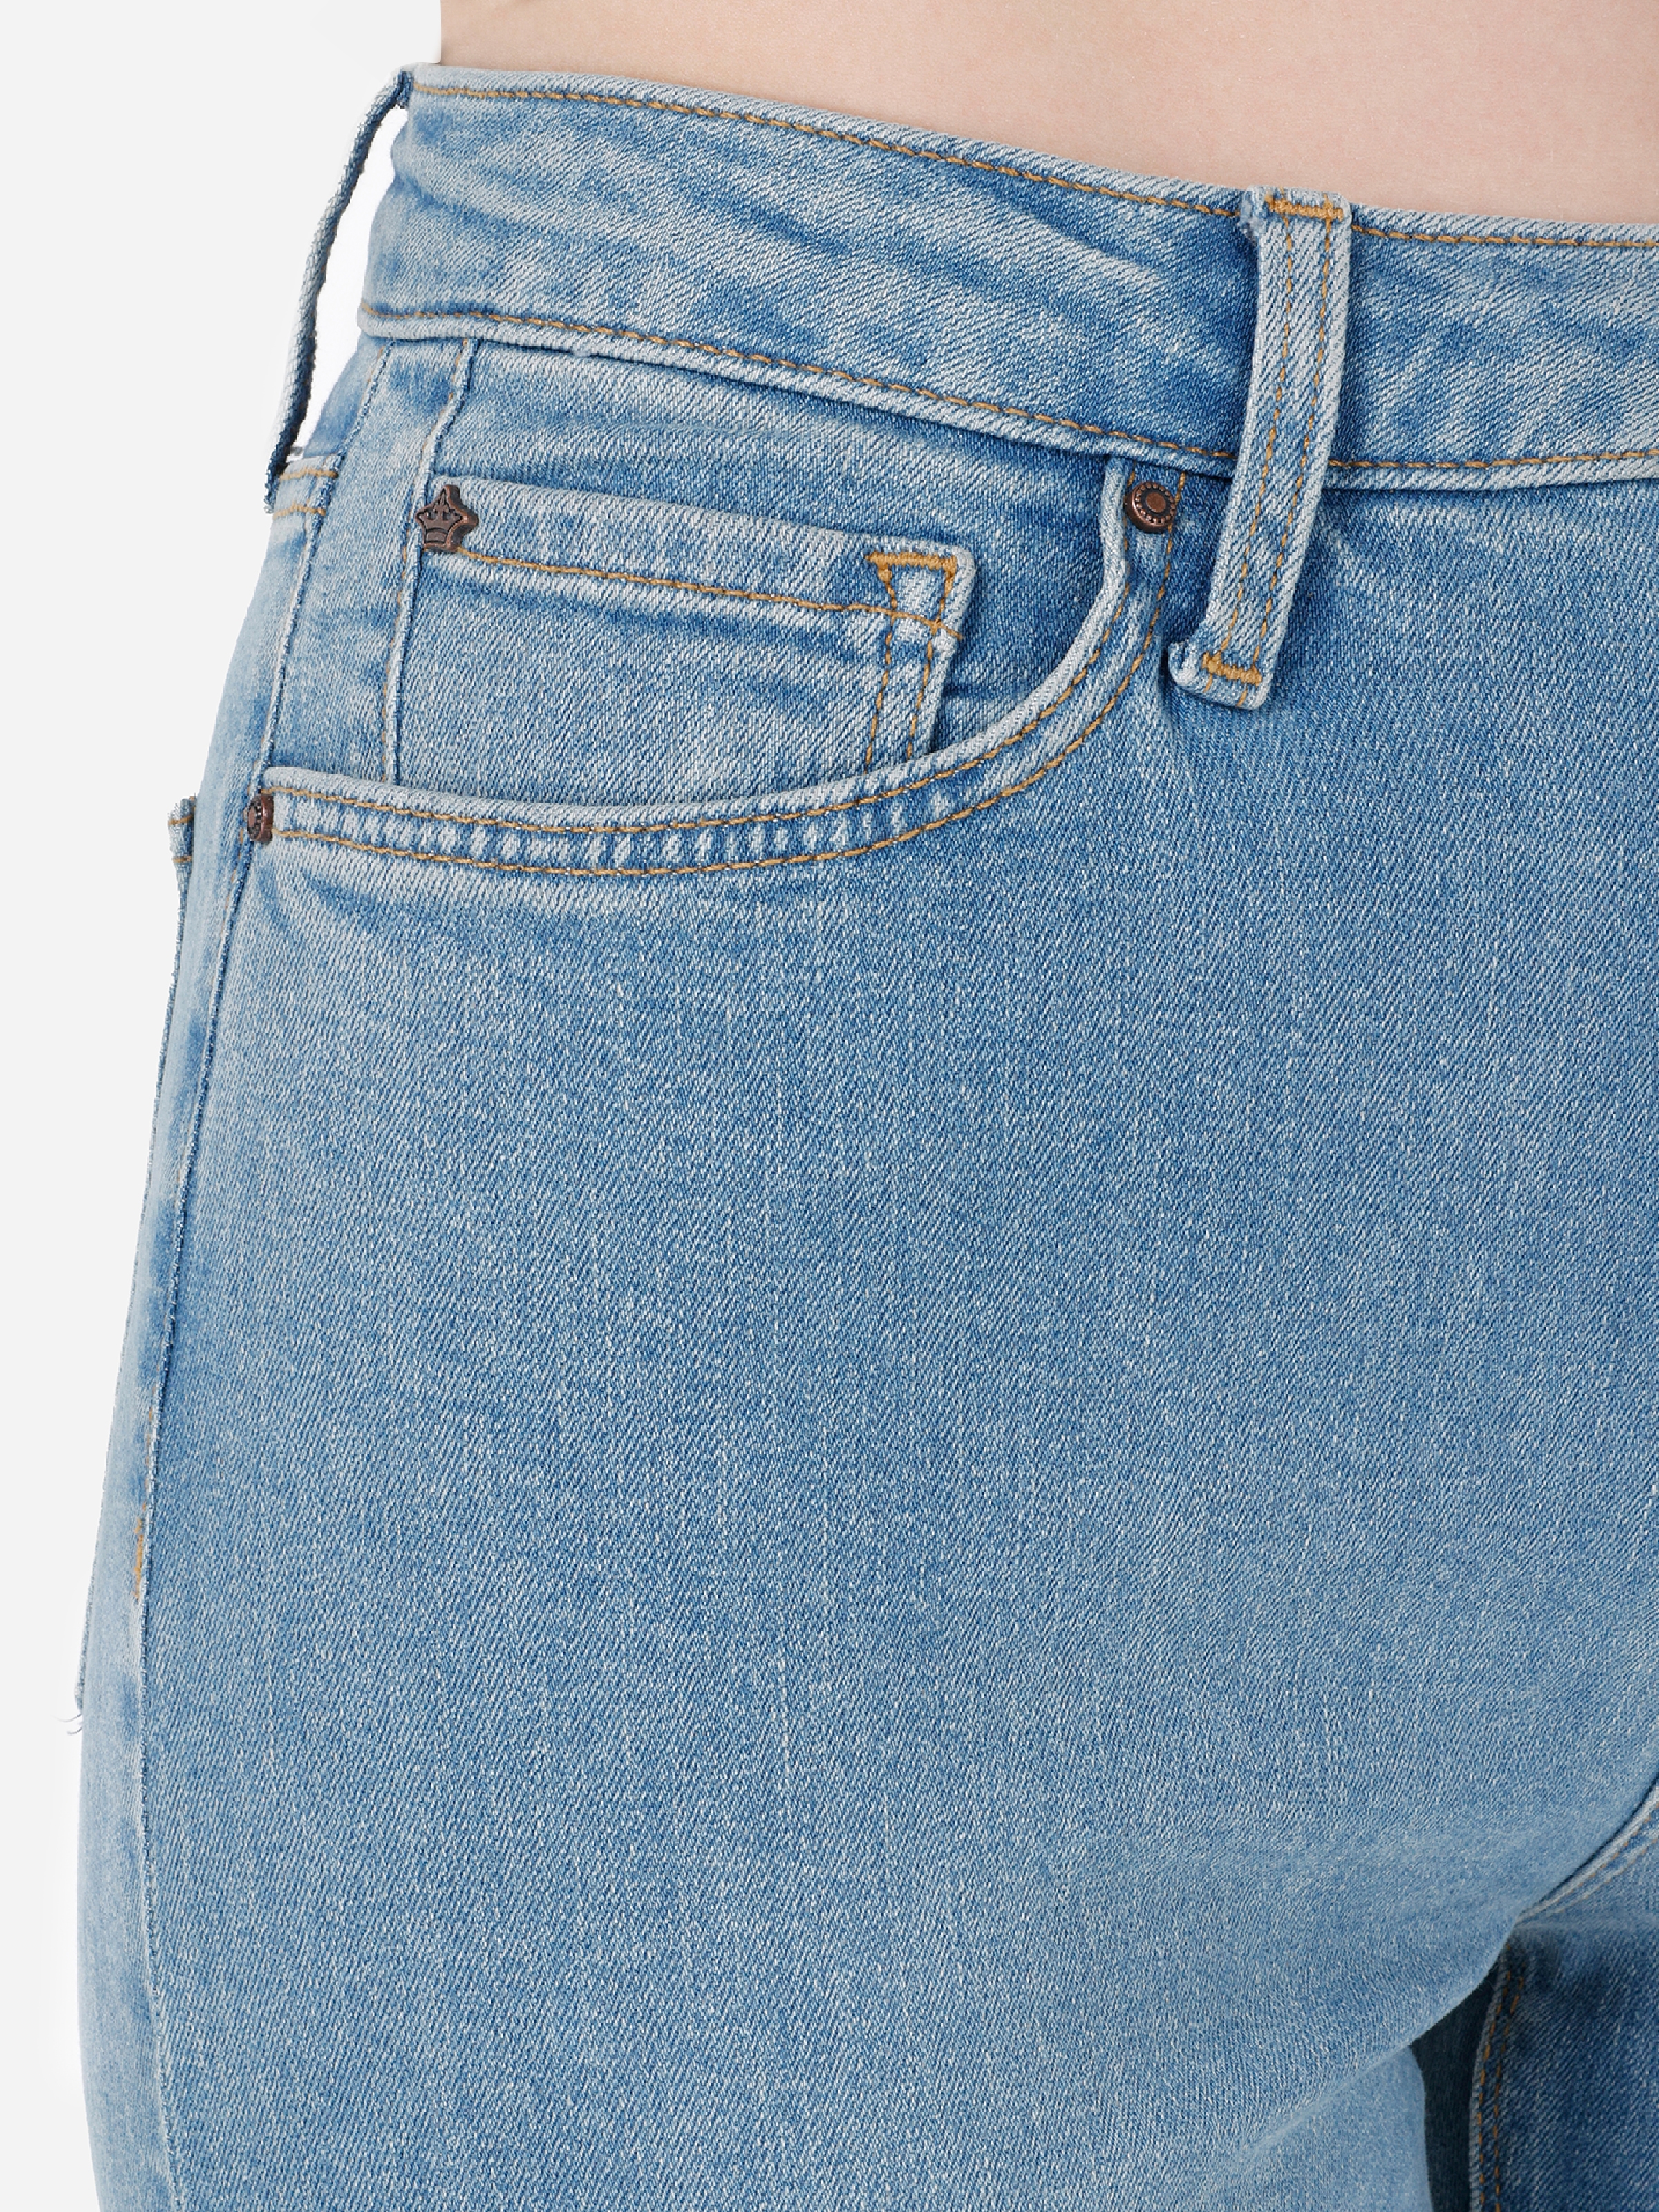 Afișați detalii pentru Pantaloni De Dama Denim Regular Fit 791 MONICA CL1069221